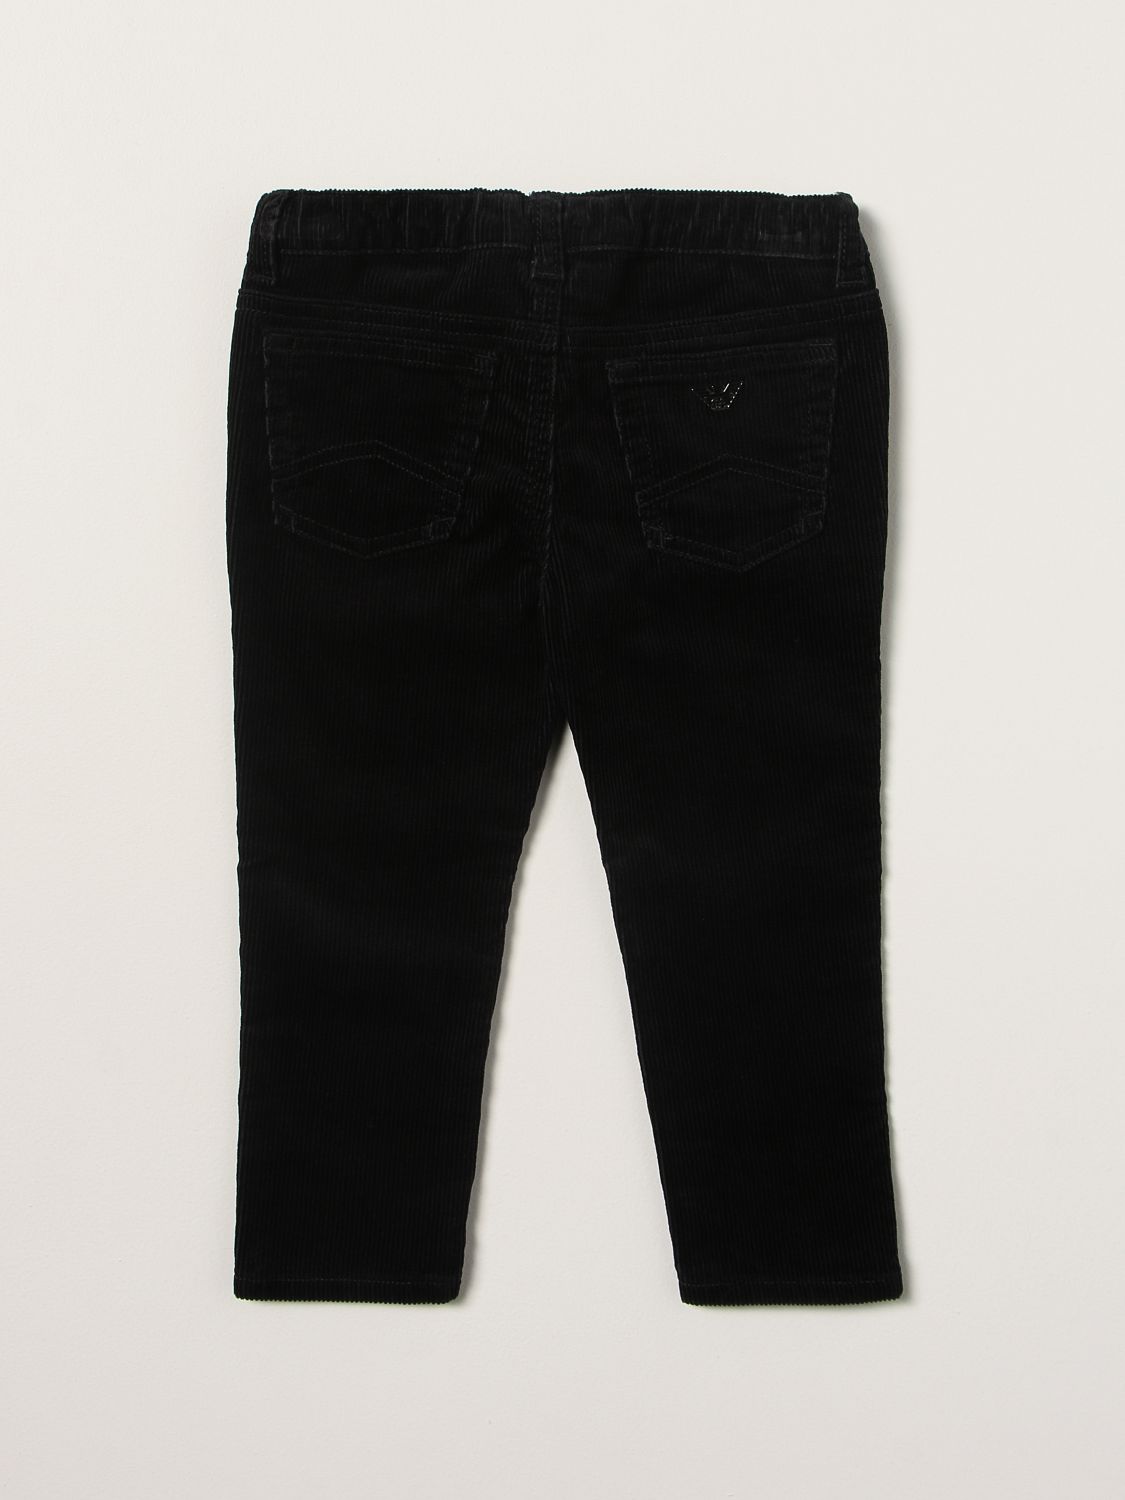 Pantalón Emporio Armani: Pantalón niños Emporio Armani azul oscuro 2